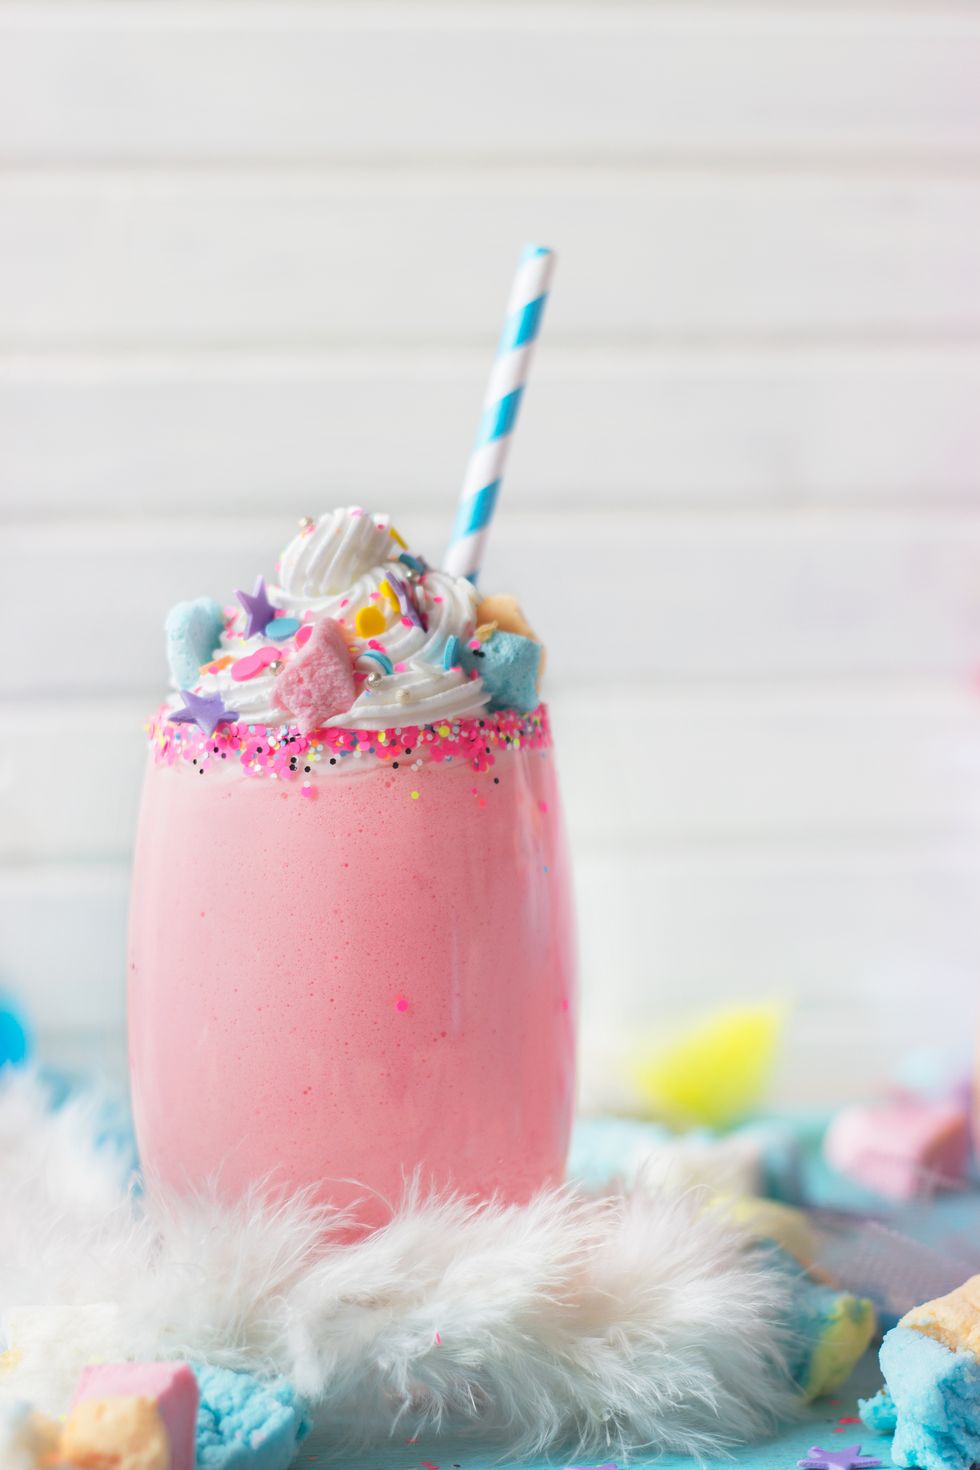 Unicorn milkshake kit gift box kids will love this magic milkshake as –  Sweet Gits and Treats